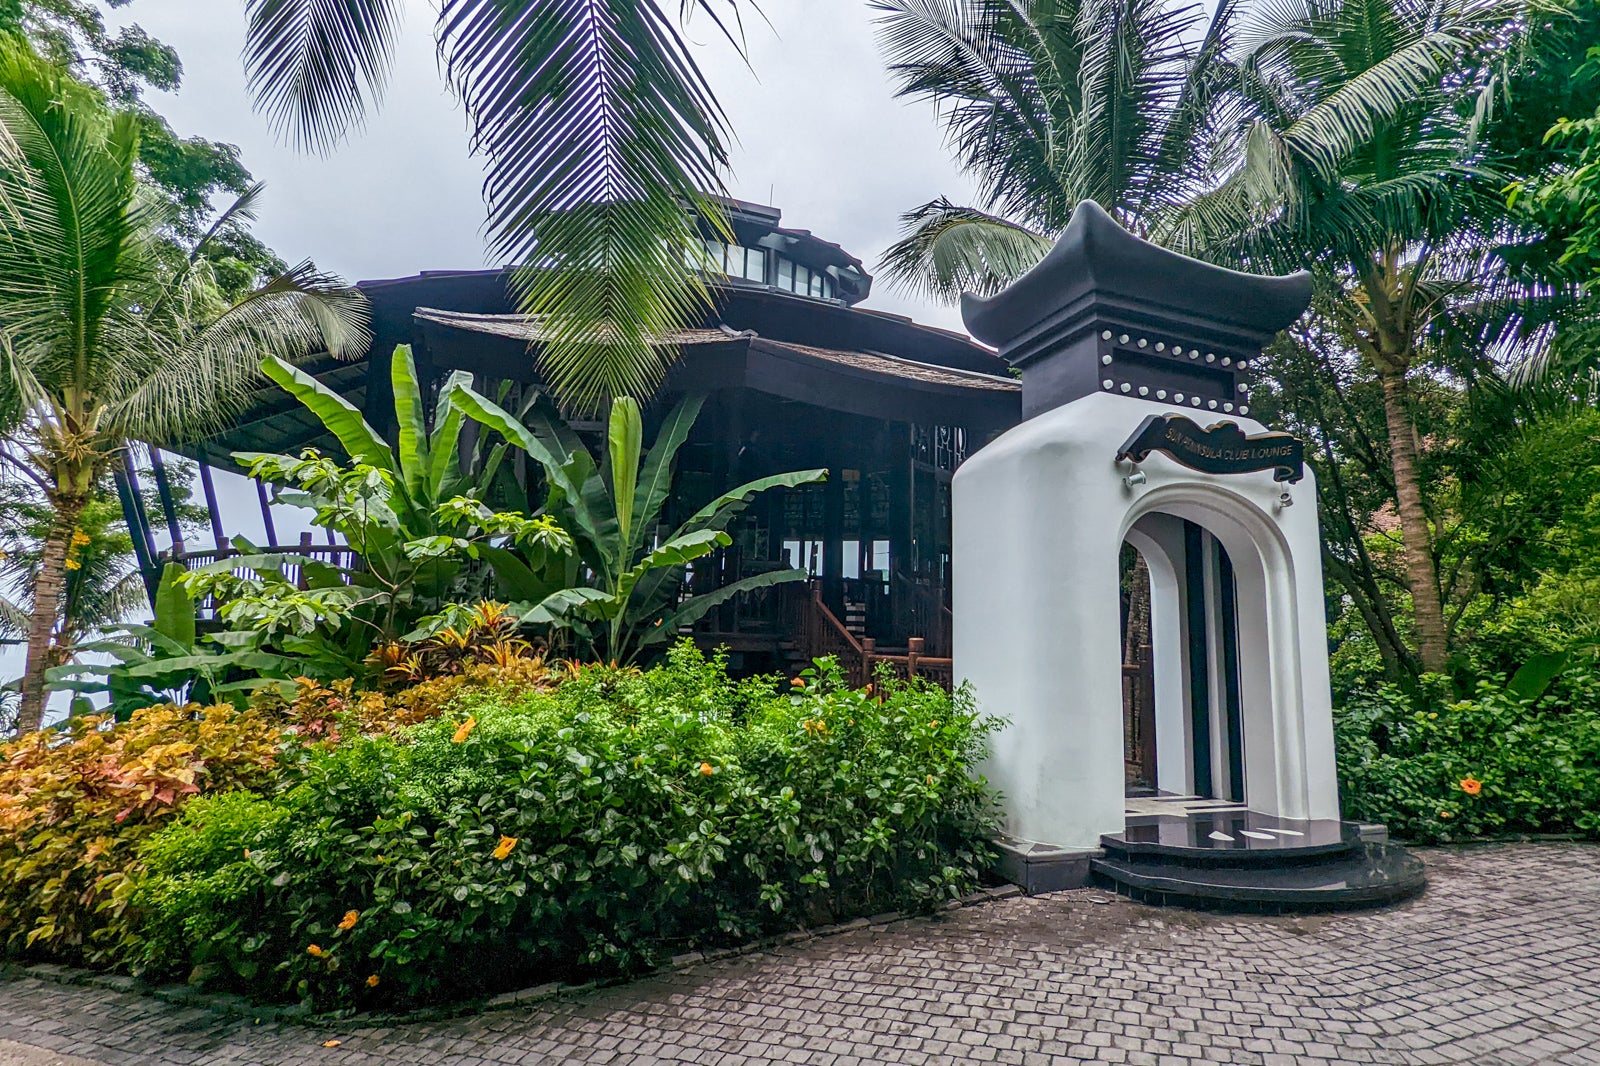 Club lounge at the InterContinental Danang Sun Peninsula Resort in Vietnam.